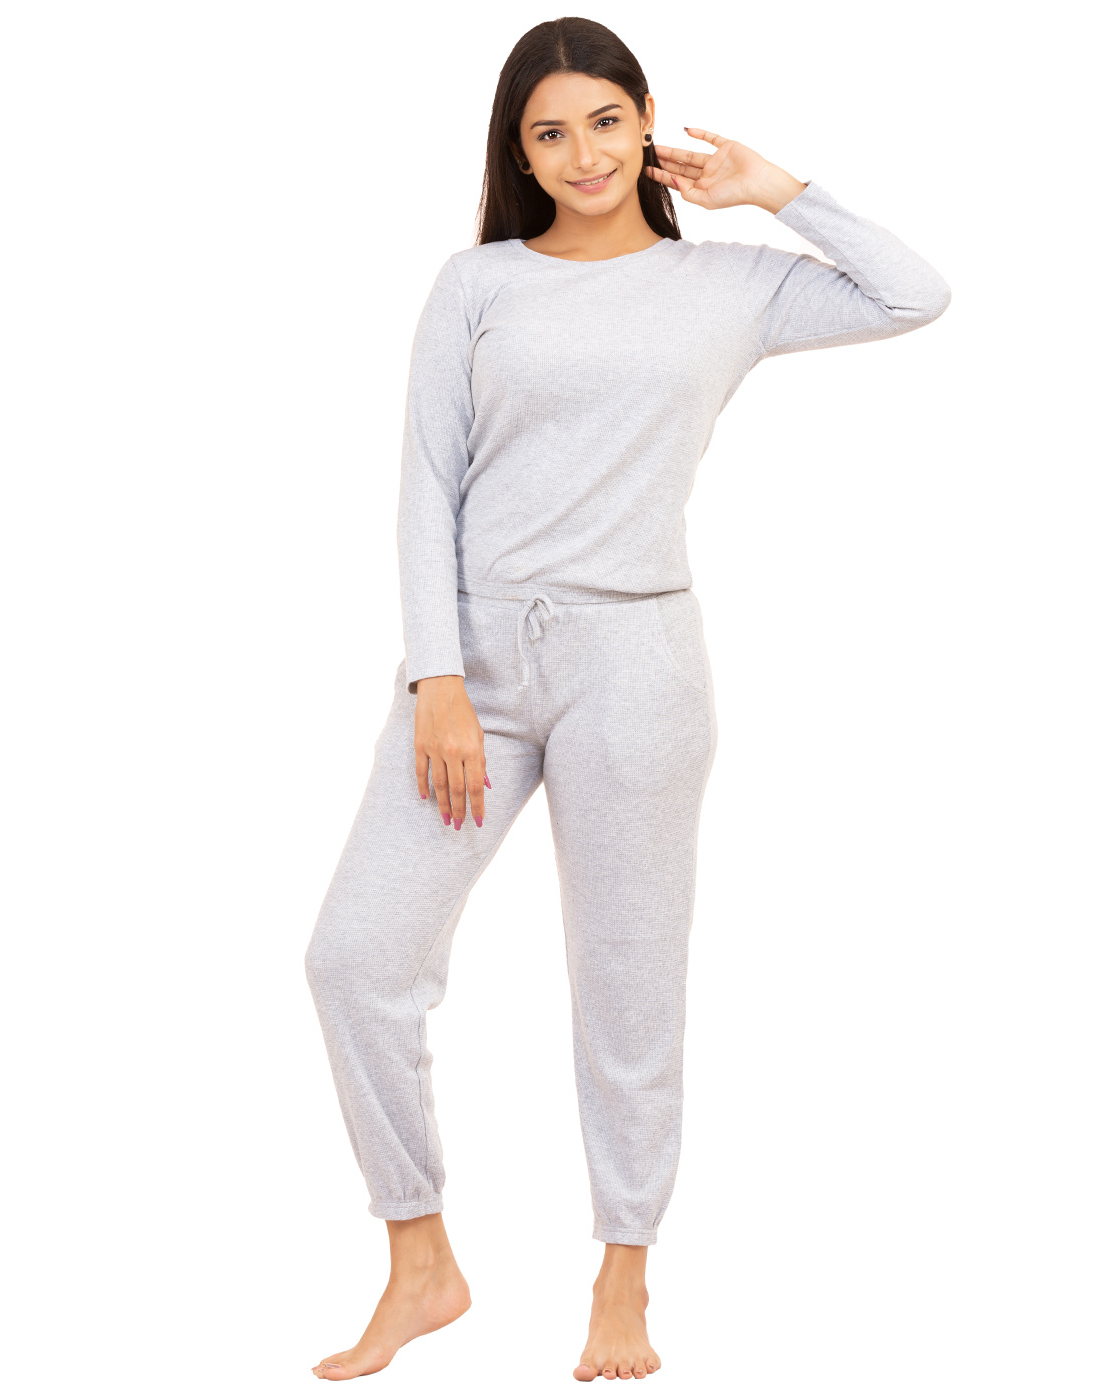 Pyjama Set for Women-Grey Waffle